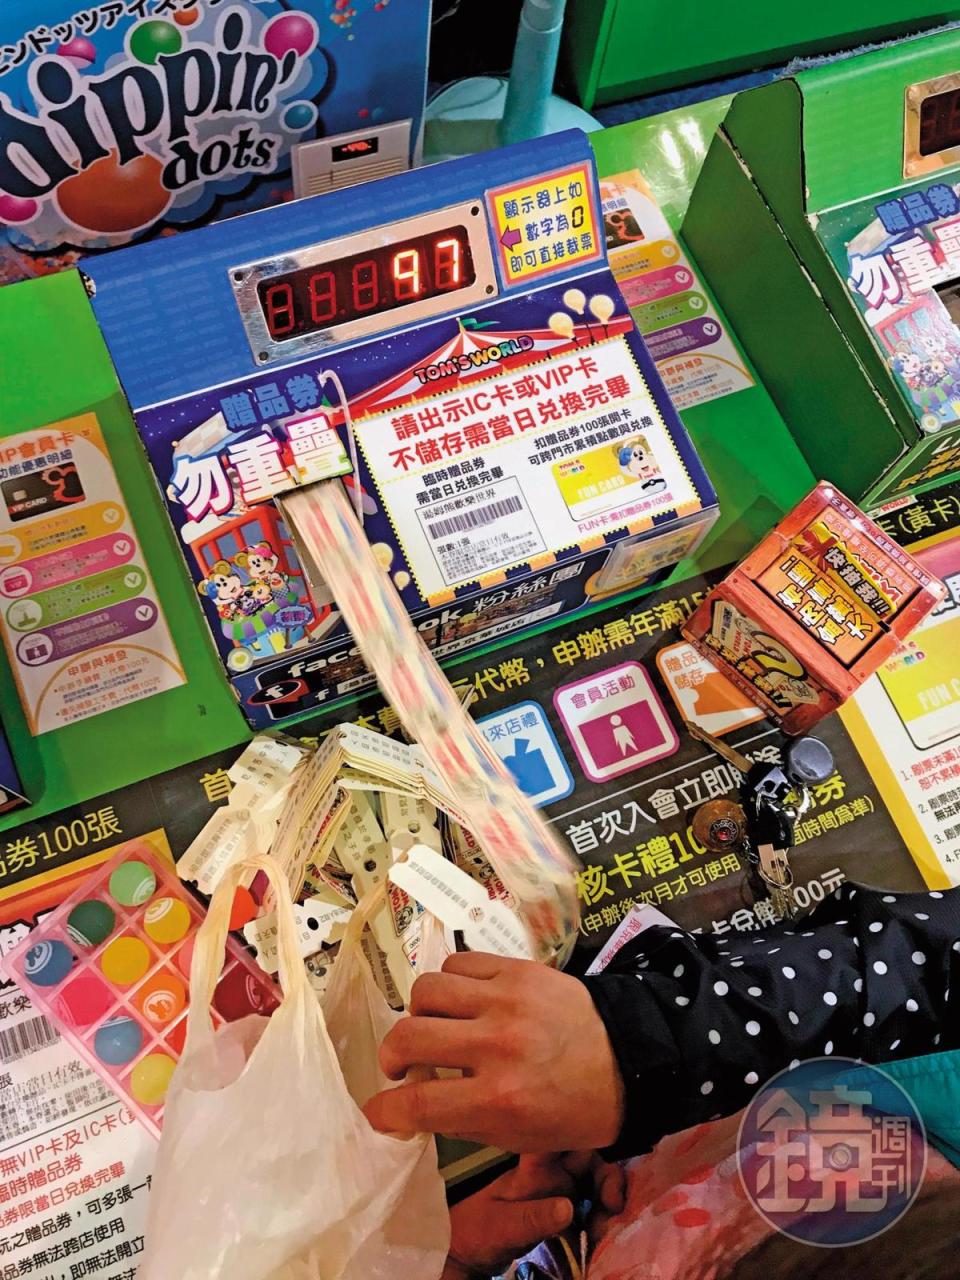 尚芳研發的彩票計算機單日可計算上百萬張彩票，成功賣進新加坡。